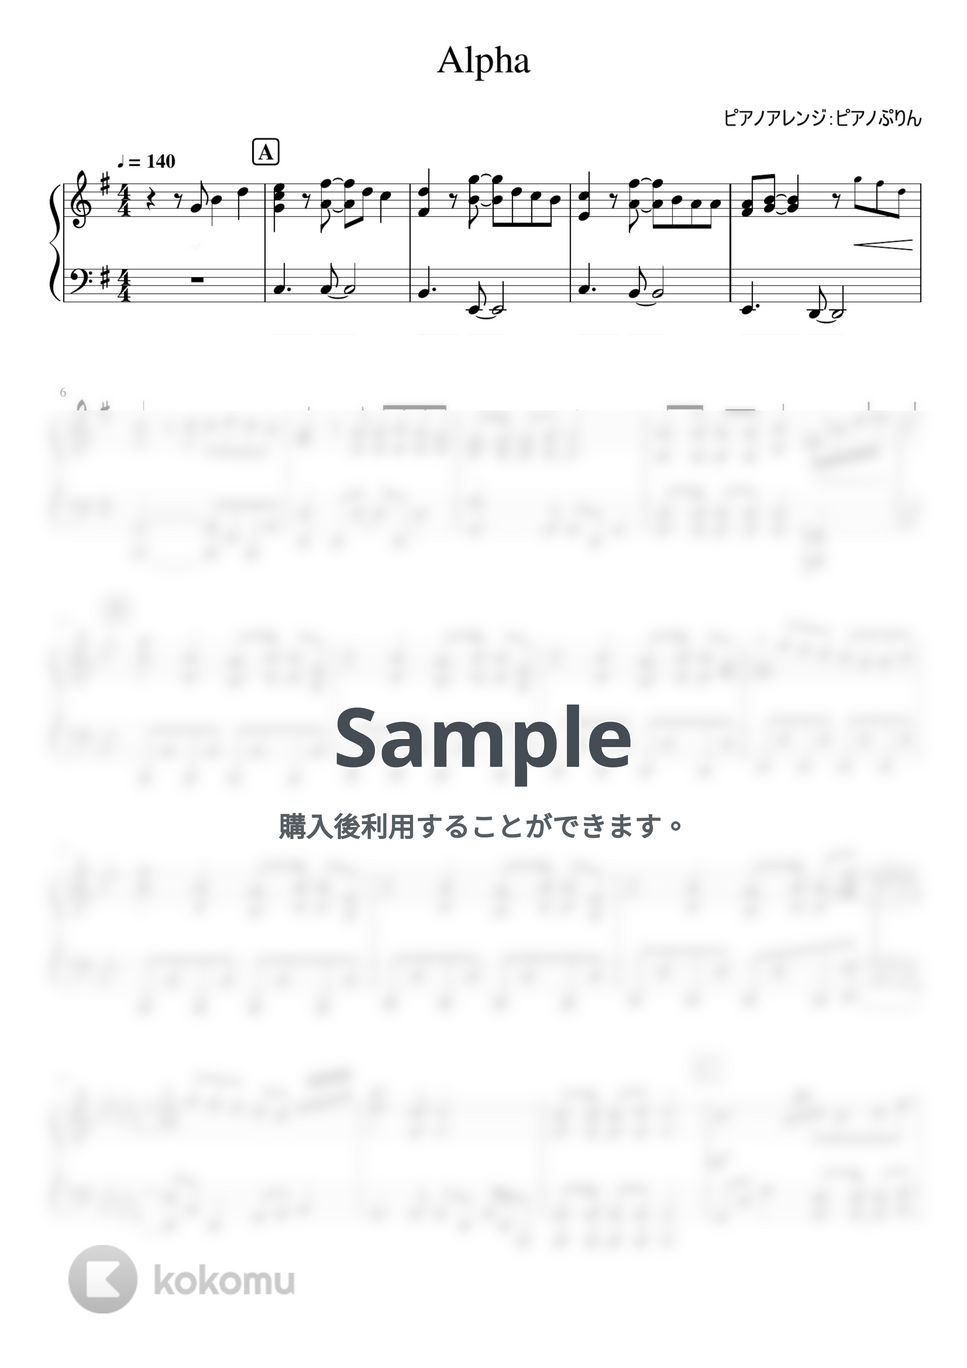 なにわ男子 - Alpha (3rd ALBUM「+Alpha」/ピアノソロ上級) by ピアノぷりん